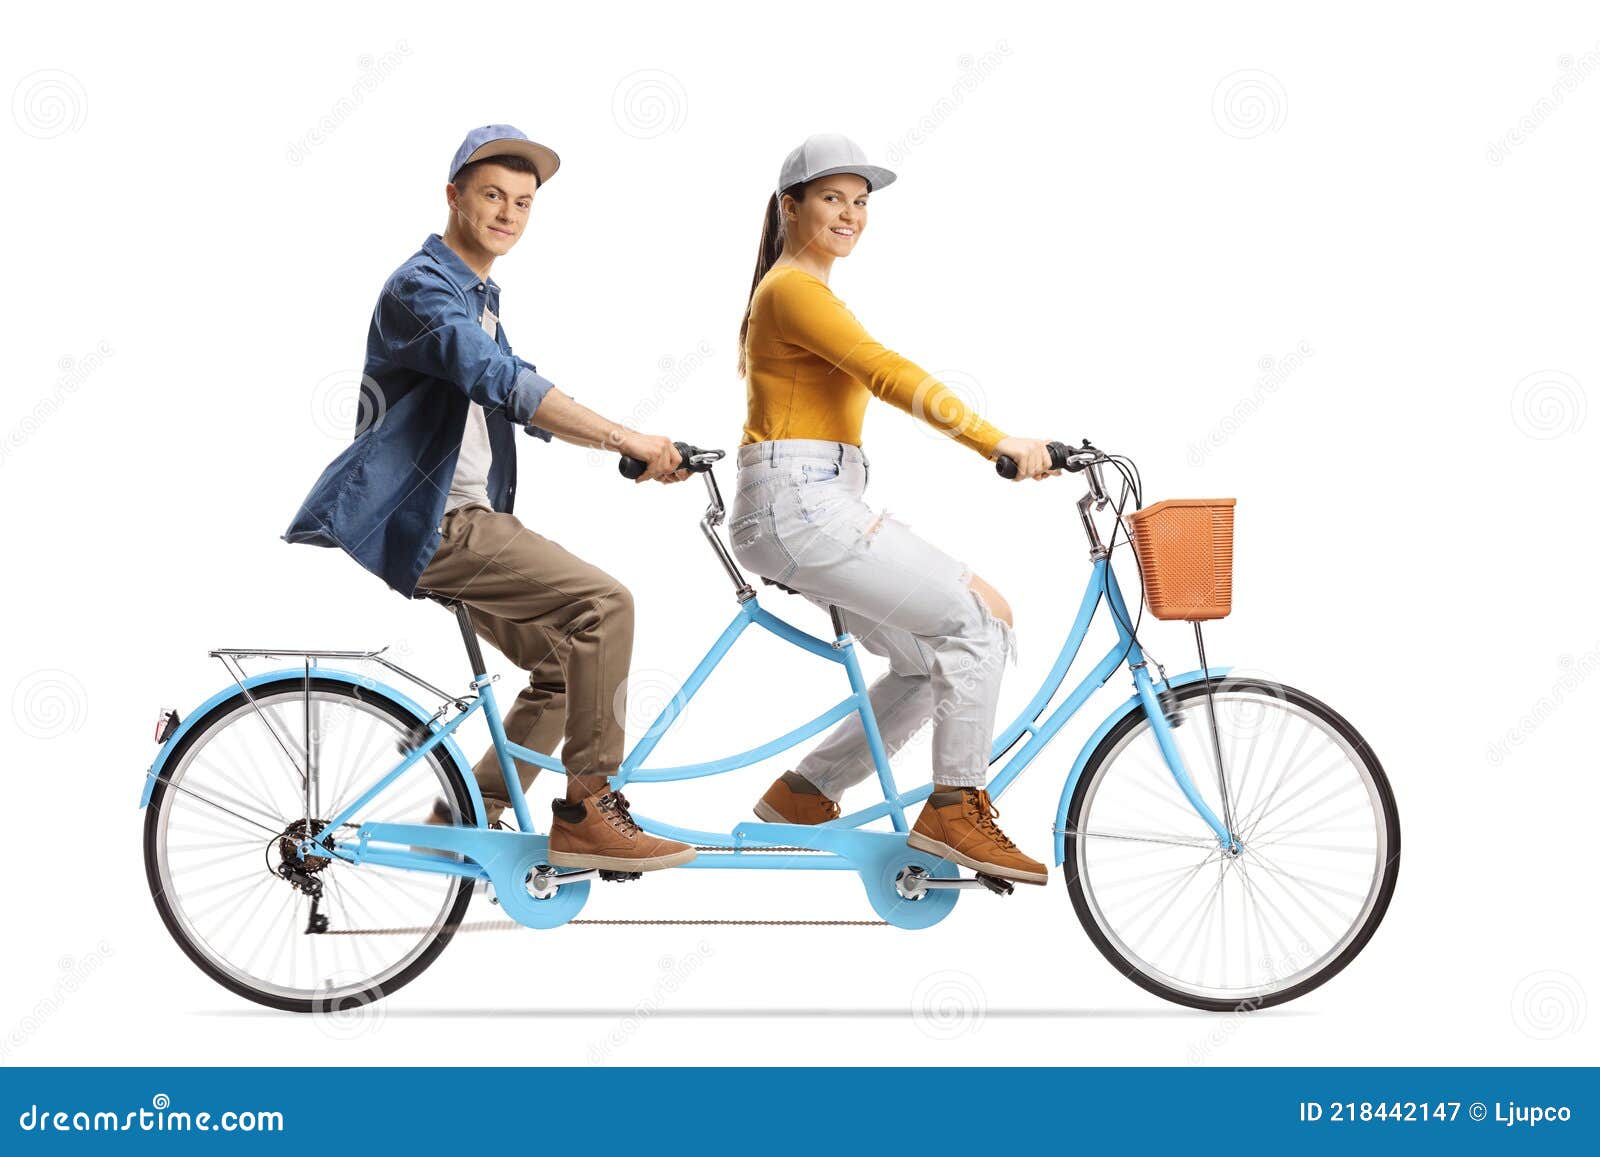 άντρας και κορίτσι που οδηγούν ένα διπλό ποδήλατο και κοιτάζουν την κάμερα  Στοκ Εικόνα - εικόνα από lifestyle, bicuspids: 218442147